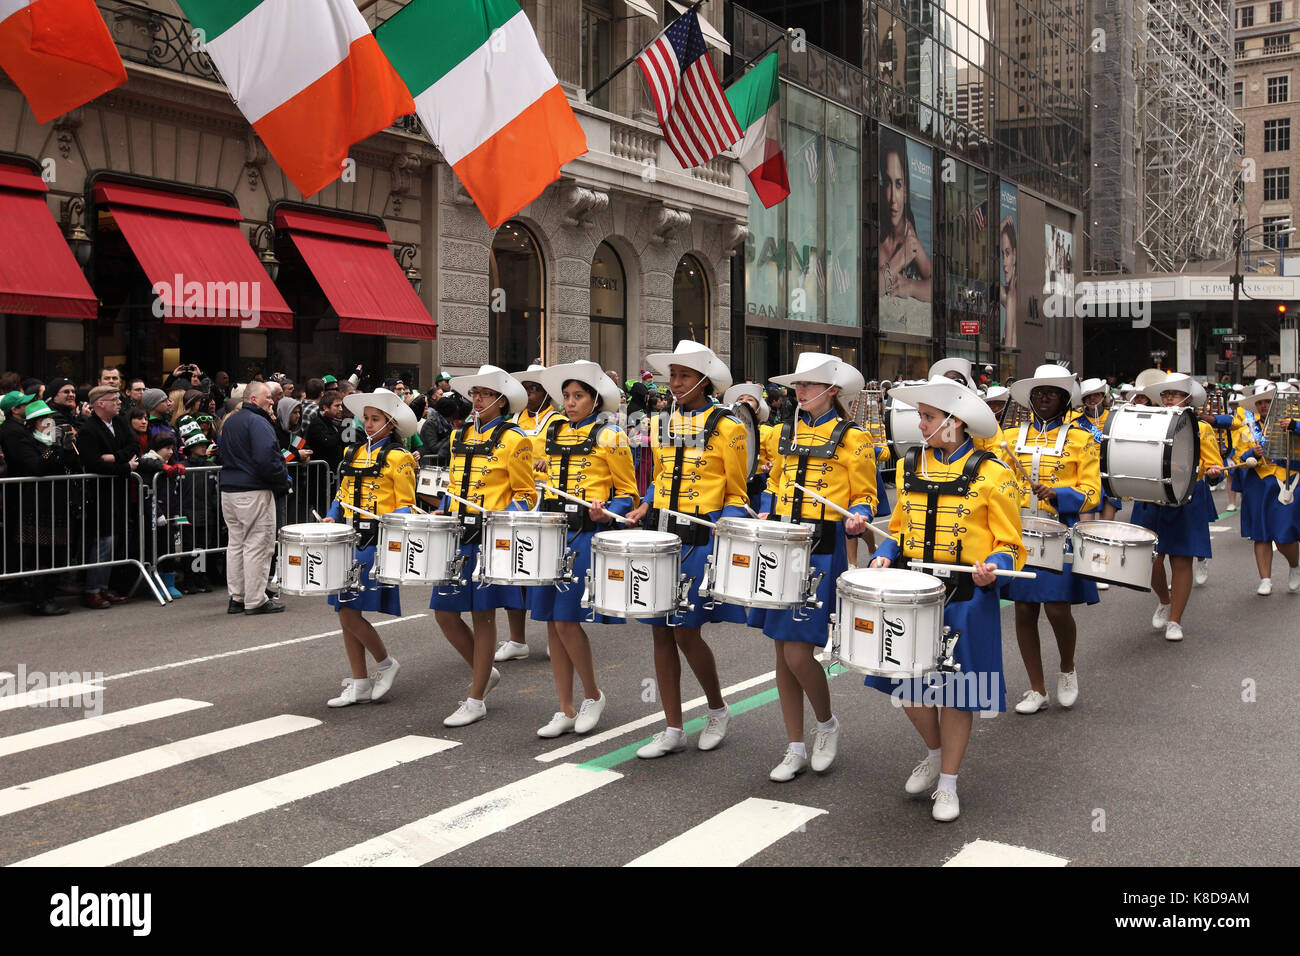 Mitglieder der Blaskapelle in der St. Patrick's Day Parade in New York City, New York, am 16. März 2013 teilnehmen. Stockfoto